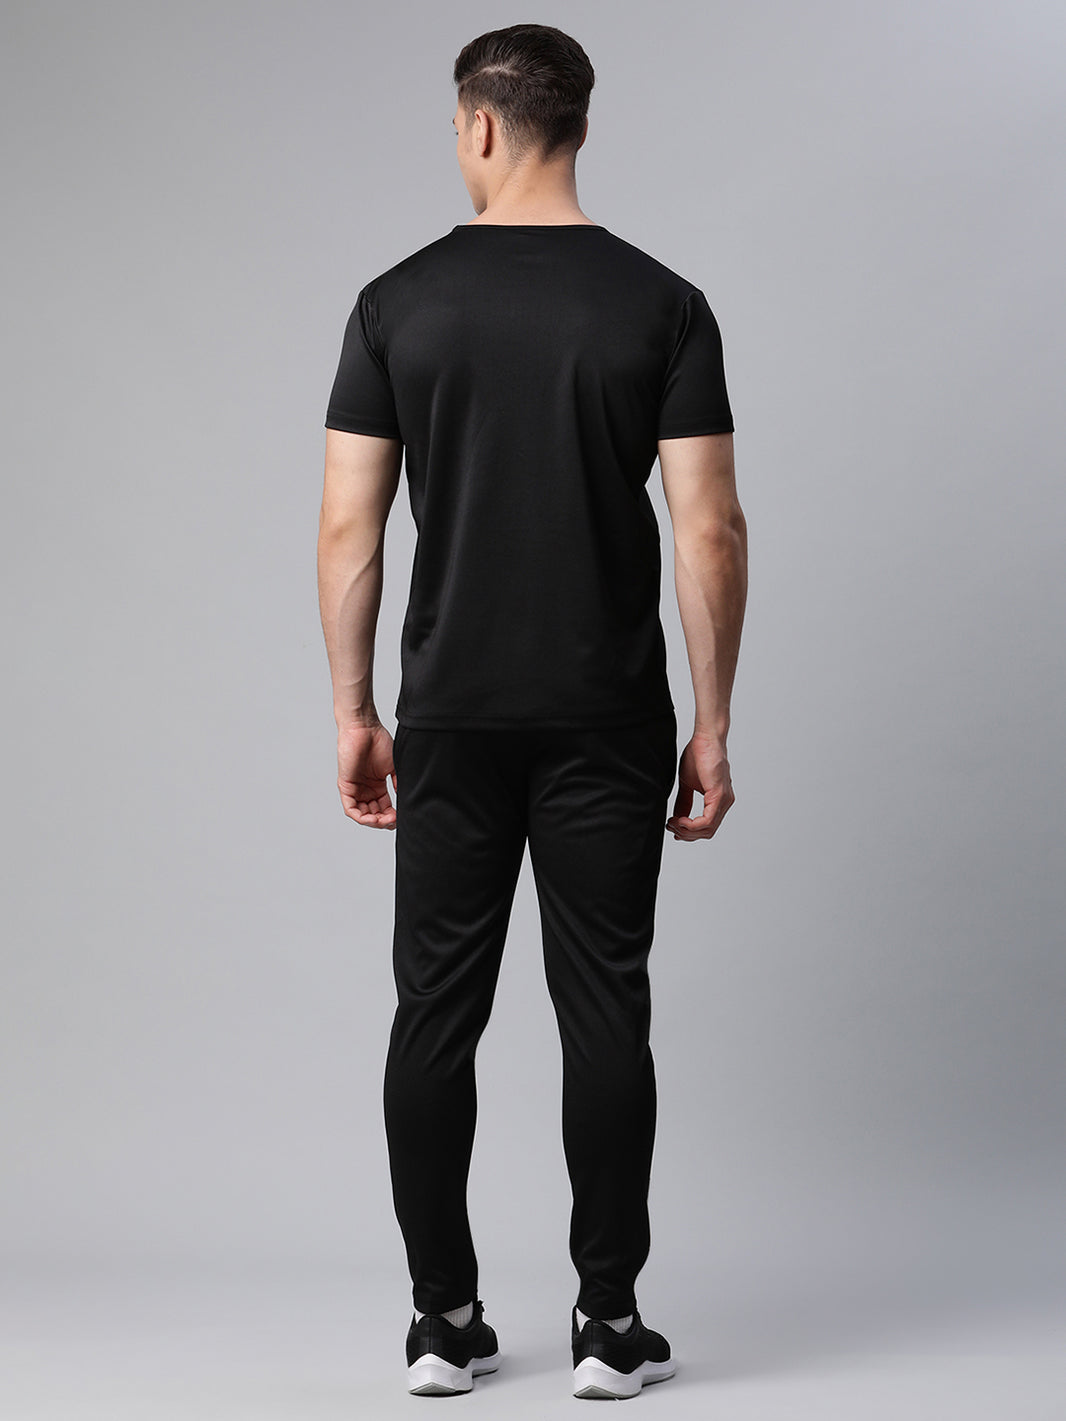 Vimal Jonney Dryfit Solid Black Tracksuit for Men